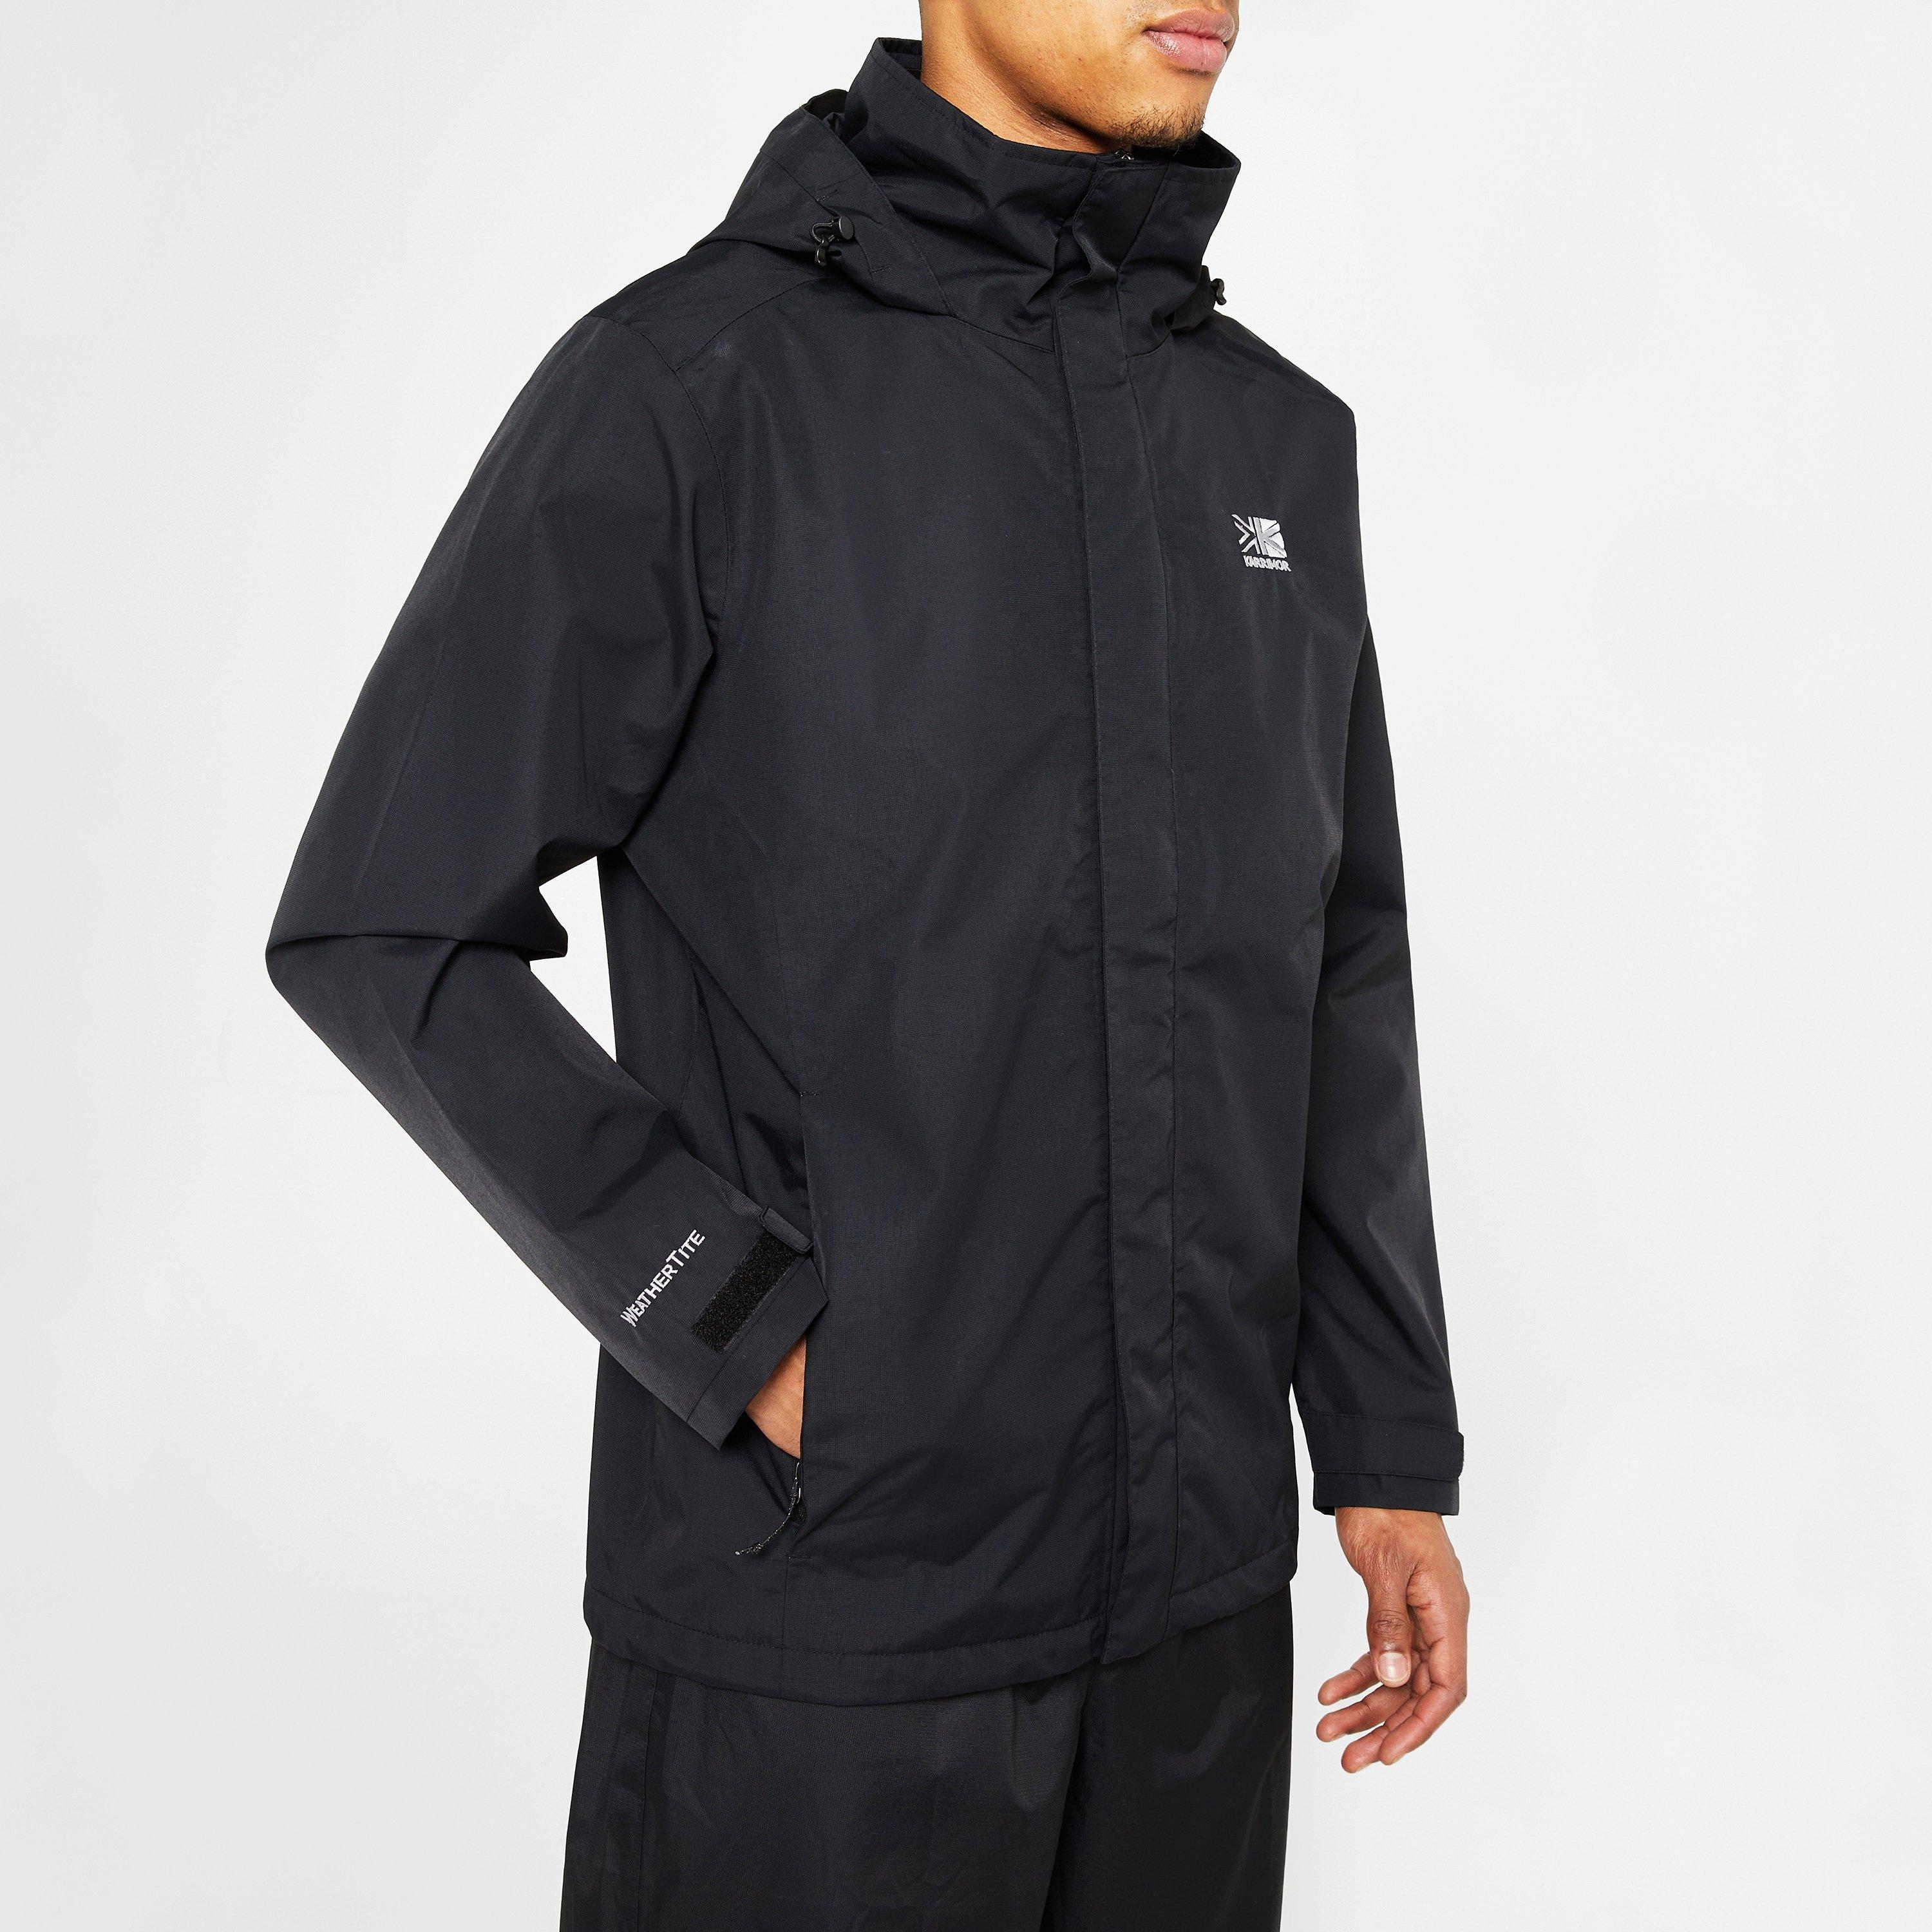 Karrimor | Urban Weathertite Jacket Mens | Waterproof Jackets | Sports ...